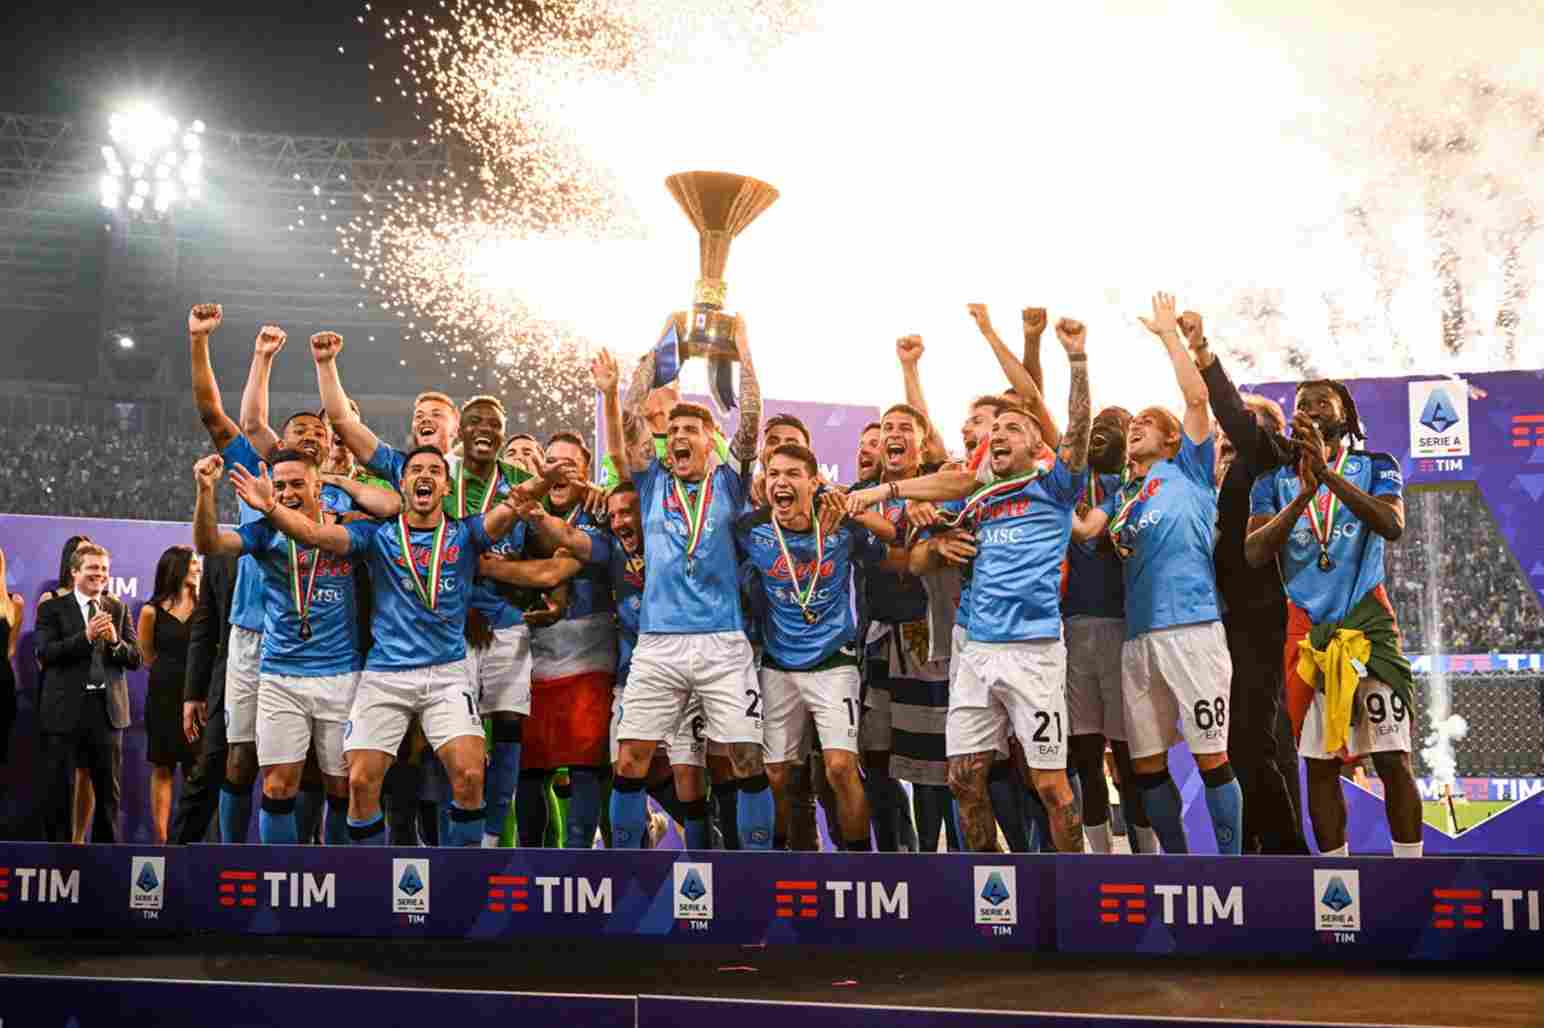  Italian-Serie-A es la máxima categoría del sistema de ligas de fútbol de Italia. Fue fundada en 1898 y actualmente está compuesta por 20 equipos. Es considerada una de las ligas más prestigiosas y competitivas de Europa, con equipos como Juventus, Inter de Milán, AC Milan y Roma entre sus participantes. La temporada se disputa de agosto a mayo y el equipo que obtiene más puntos al final de 